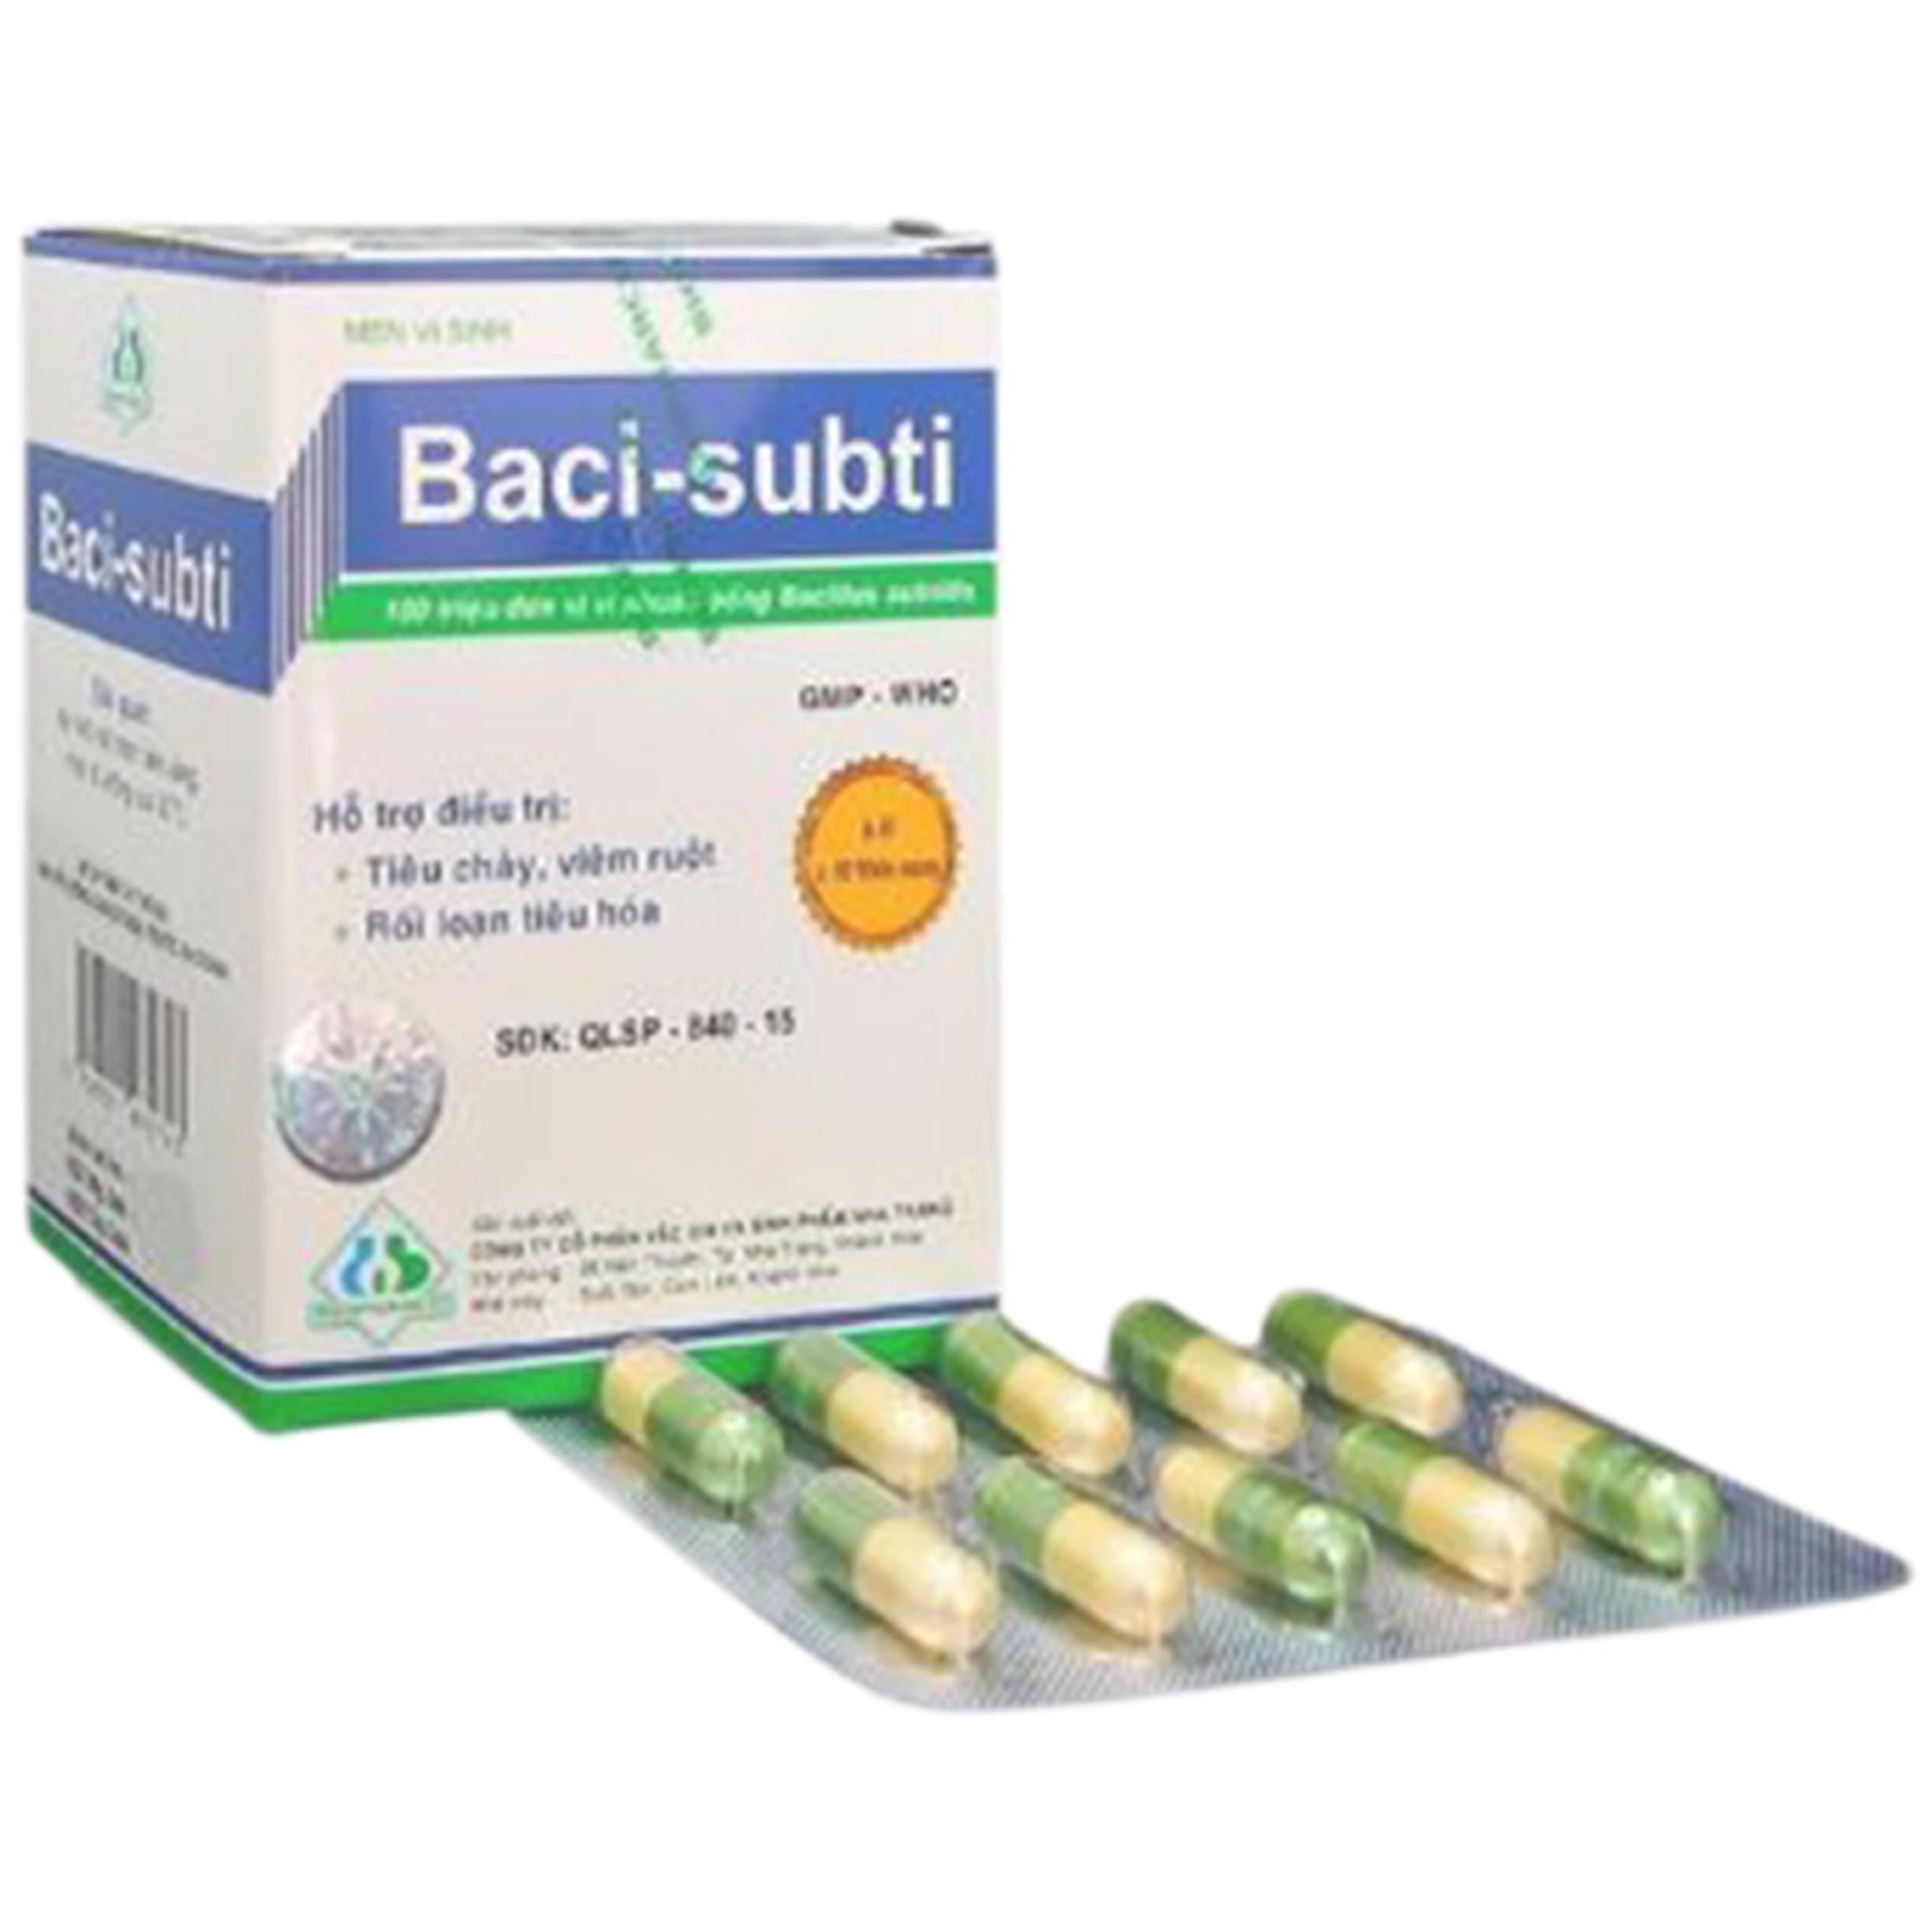 Men vi sinh Baci-subti Biopharco hỗ trợ điều trị tiêu chảy, viêm ruột, rối loạn tiêu hóa (6 vỉ x 10 viên)